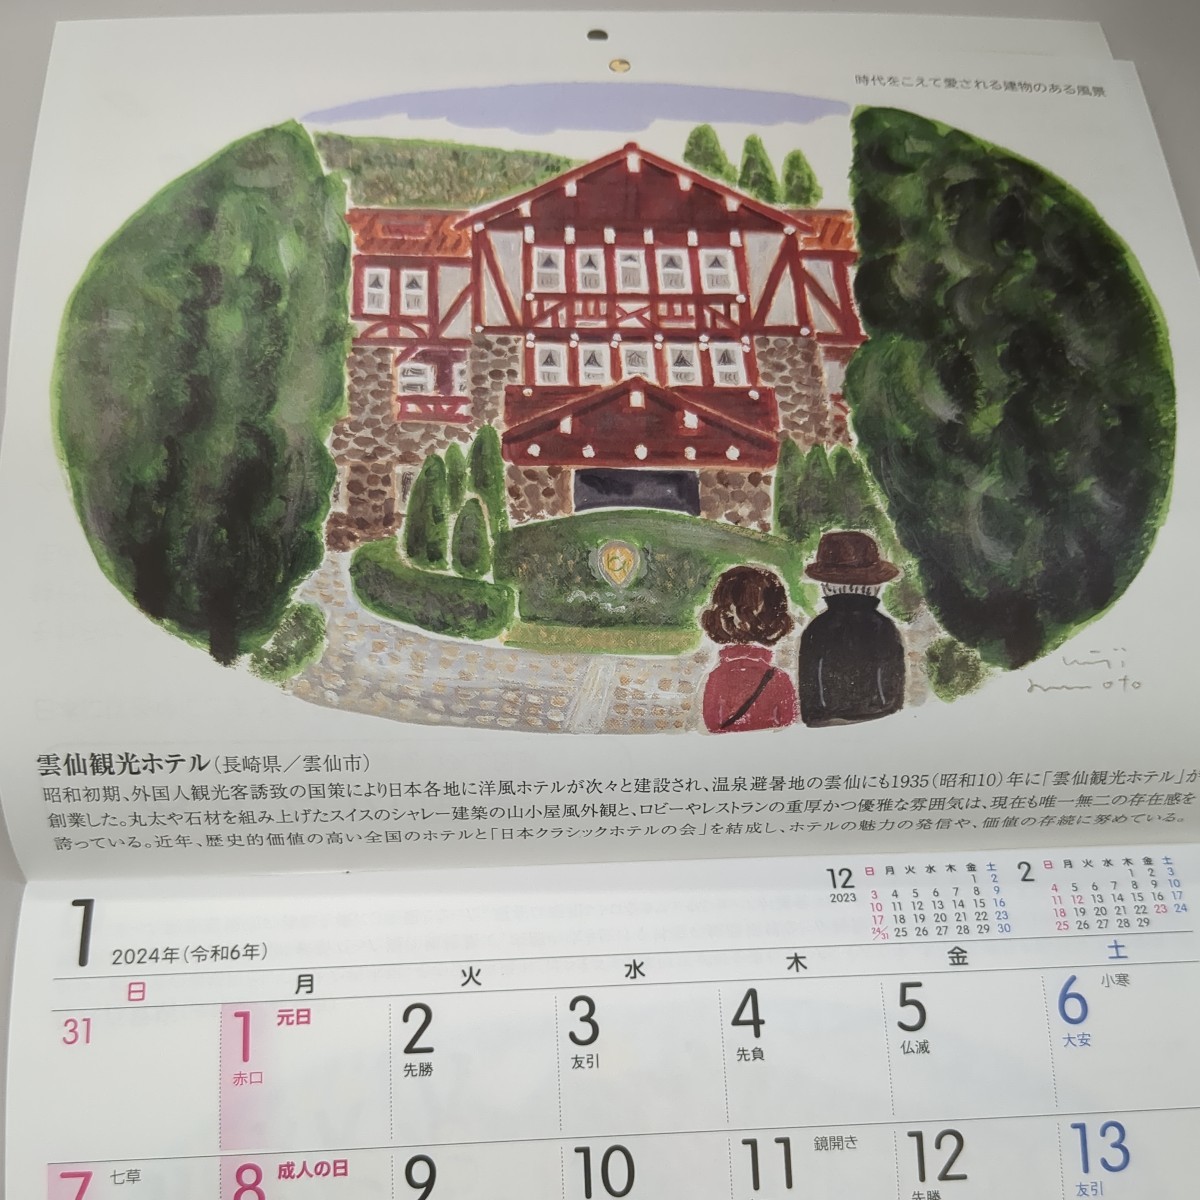 2024年(令和6年)壁掛けカレンダー/ヤクルト/みんなの風景～時代をこえて愛される建物のある風景～ 表紙の岡山県から_画像5